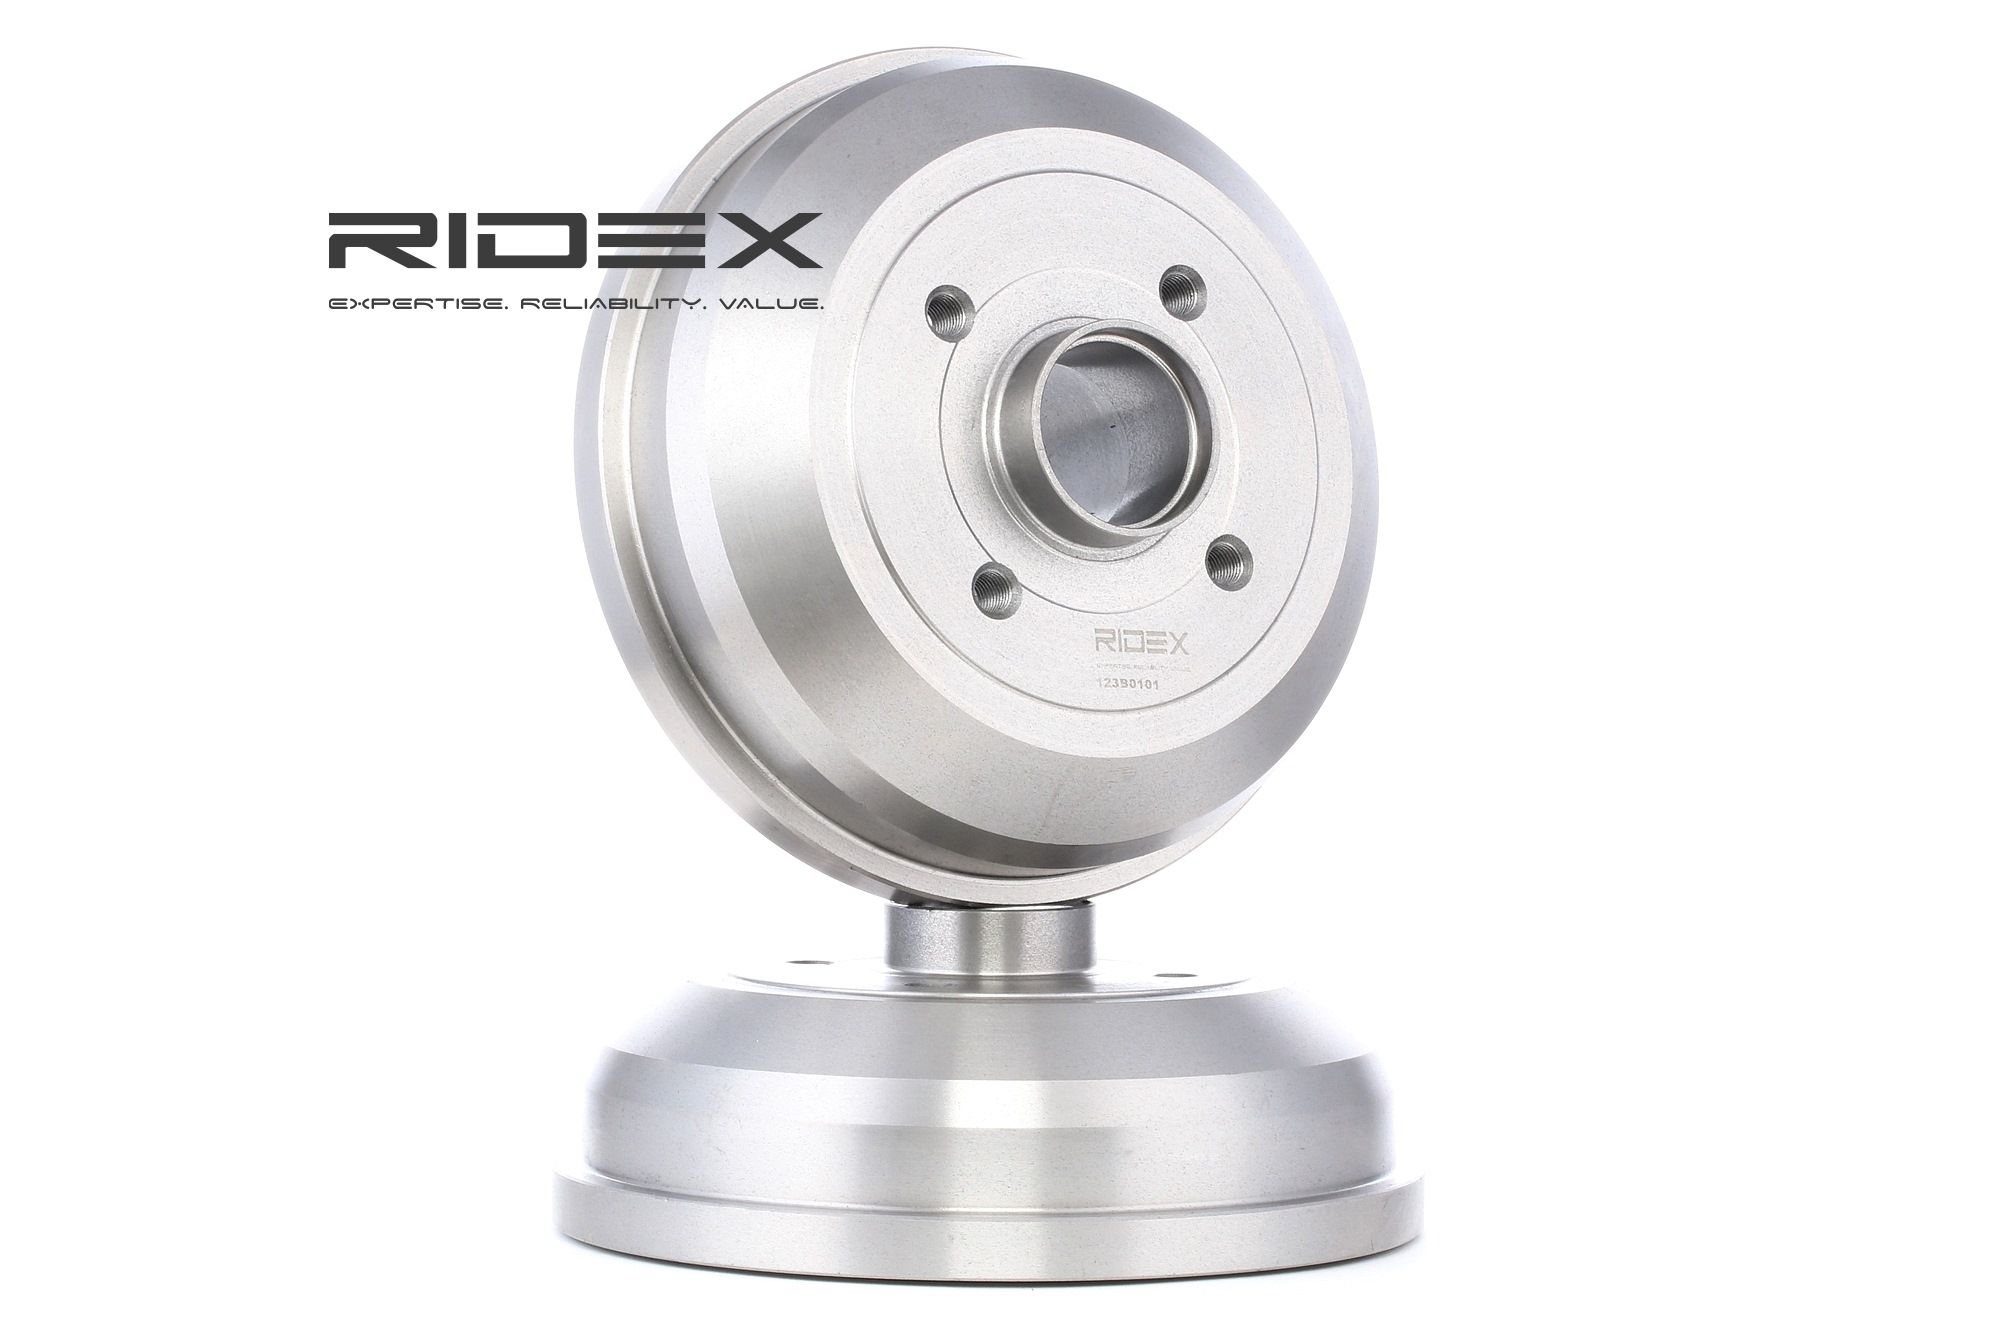 RIDEX 123B0101 originali OPEL Coppia tamburi freno con mozzo portaruota, senza anello sensore ABS, senza cuscinetto ruota, 228,0mm, Assale posteriore